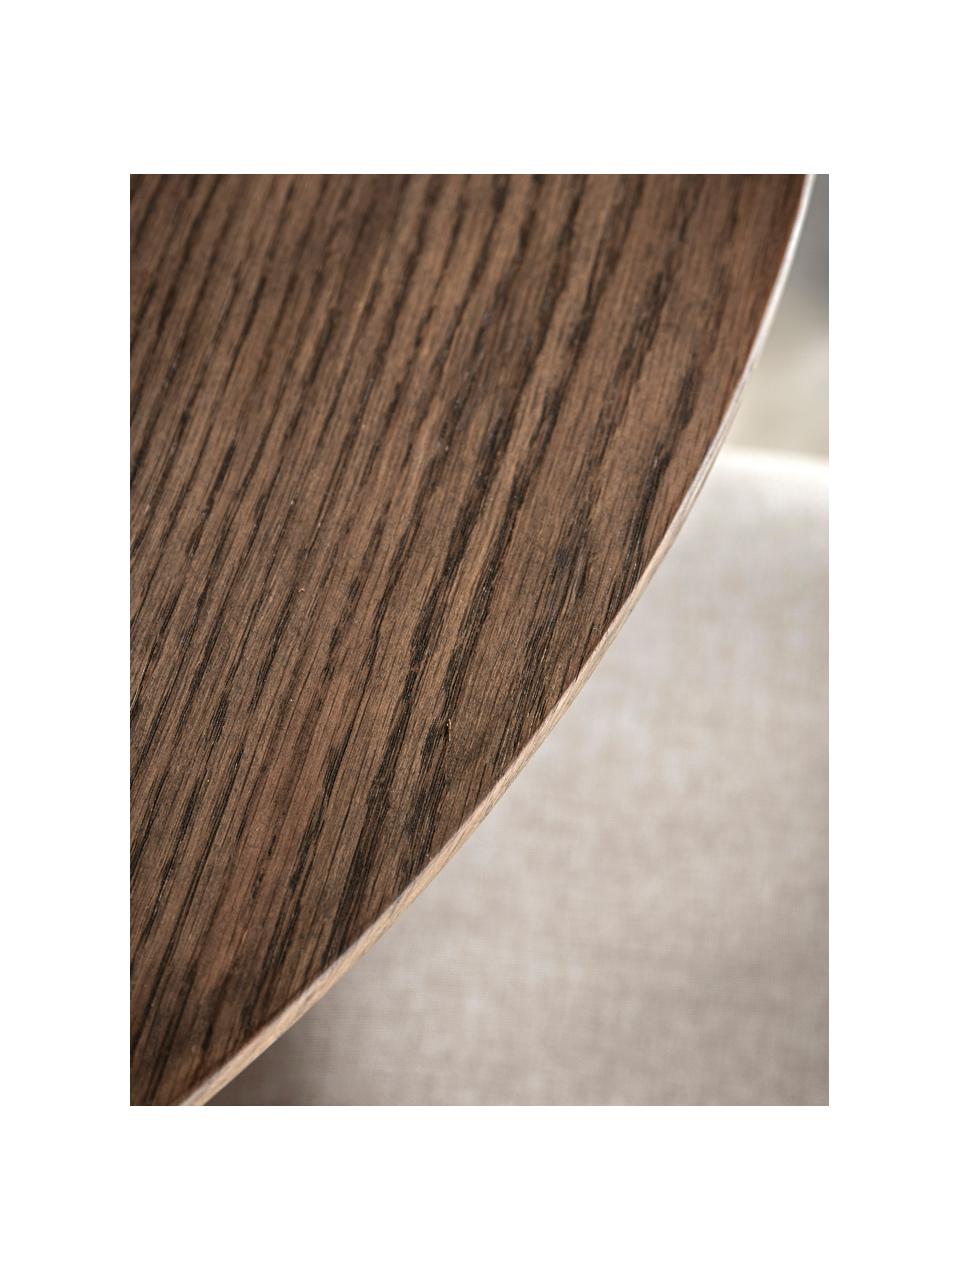 Table ronde en bois Hatfield, Ø 110 cm, Bois de chêne foncé laqué, Ø 110 cm